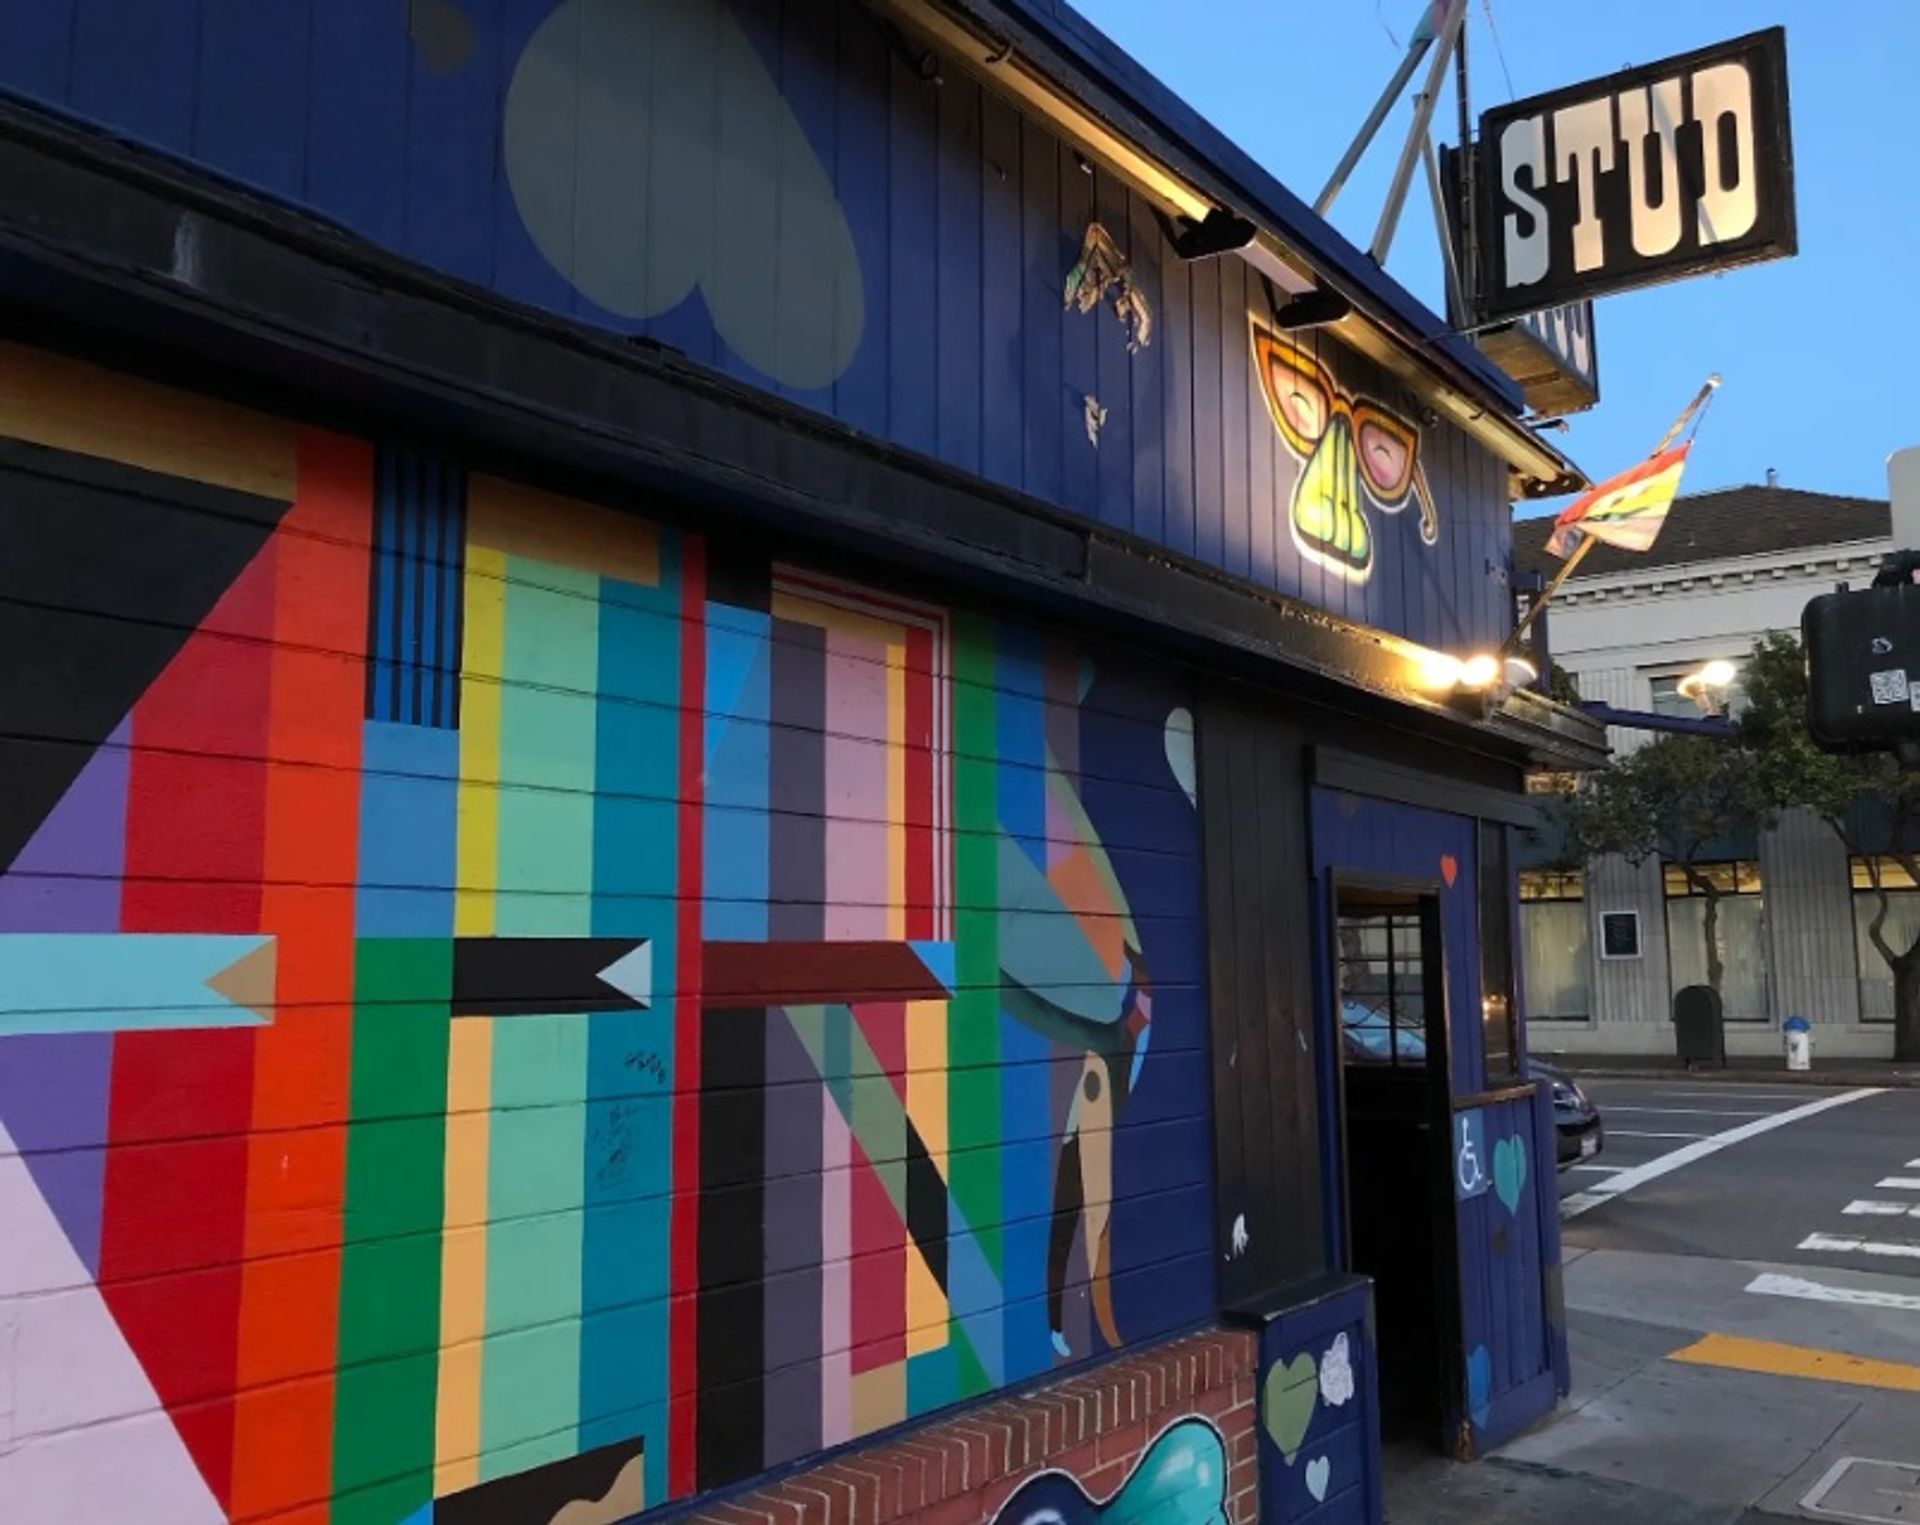 מבט חלקי על ציורי קיר בחלקו החיצוני של בר ה-Stud, בסן פרנסיסקו

תמונה מאת Dreamyshade, באמצעות ויקימדיה קומונס